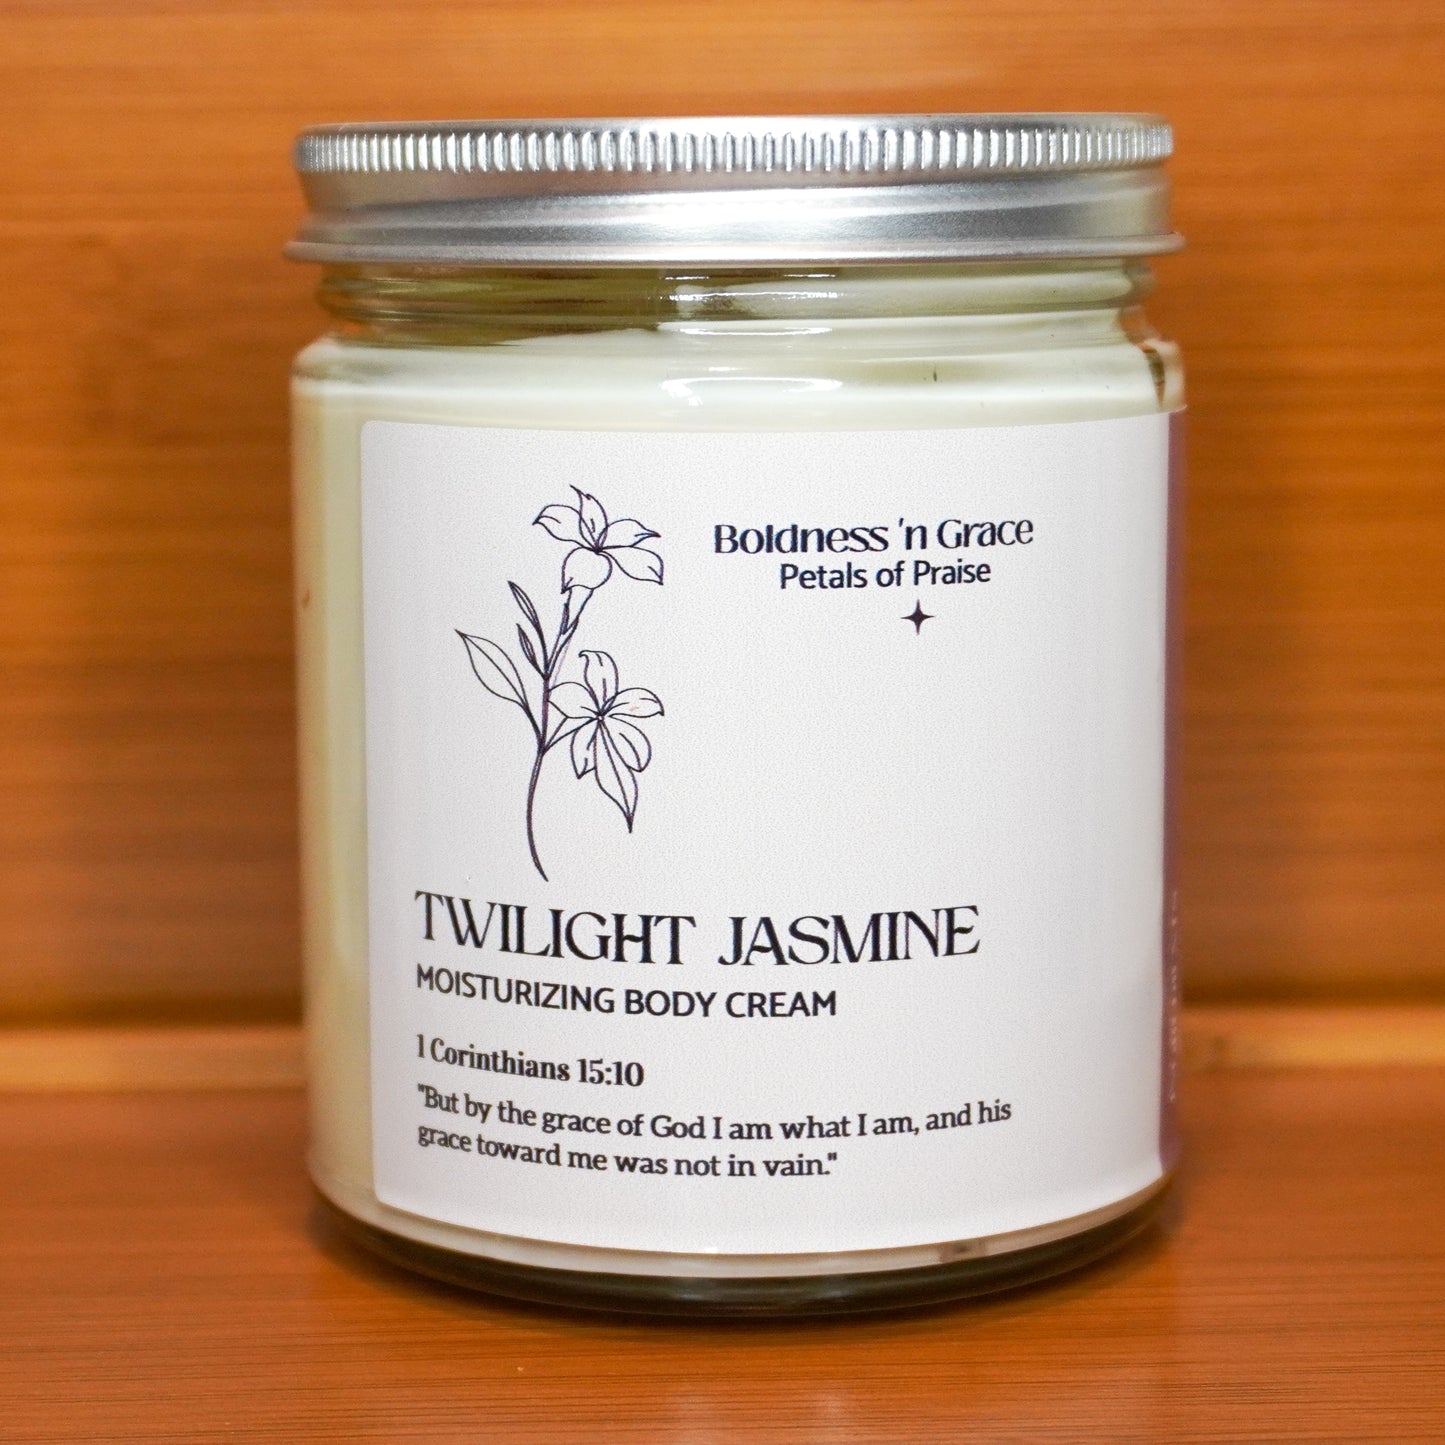 Twilight Jasmine Body Cream - 8oz (Petals of Praise)